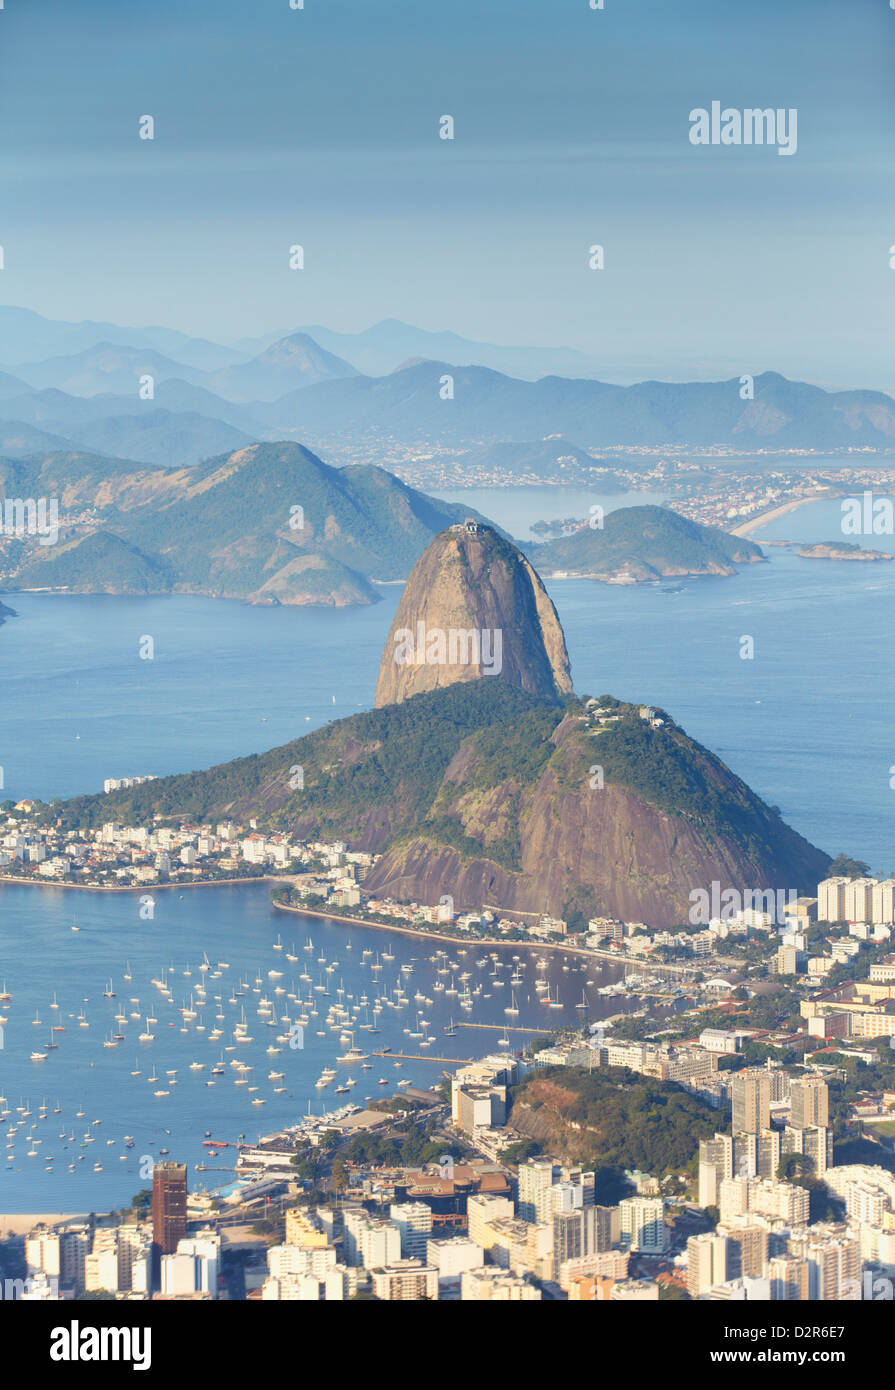 View of Sugar Loaf Mountain (Pao de Acucar) and Botafogo Bay, Rio de Janeiro, Brazil, South America Stock Photo